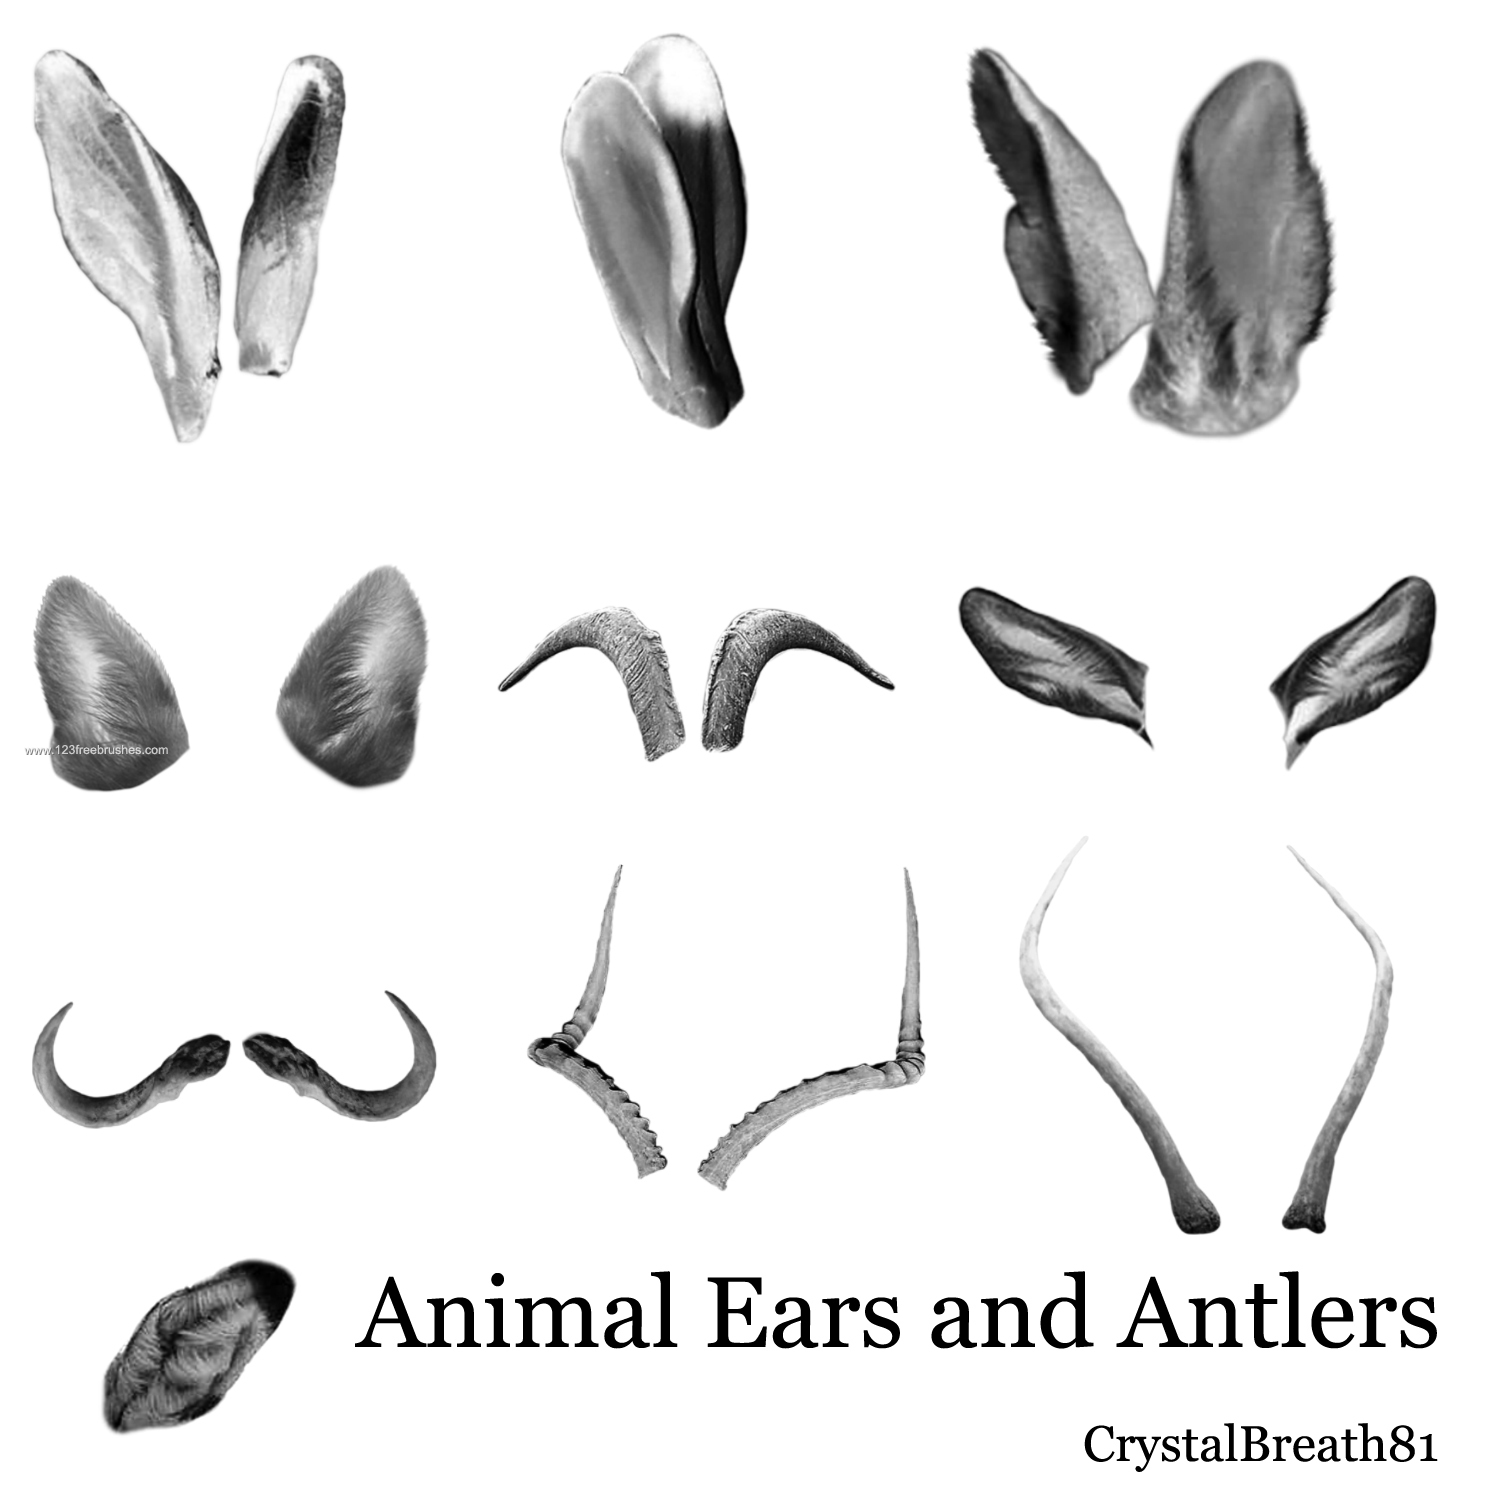 Animal Ears and Antlers | Free Adobe Photoshop Cs5 Brushes | 123Freebrushes